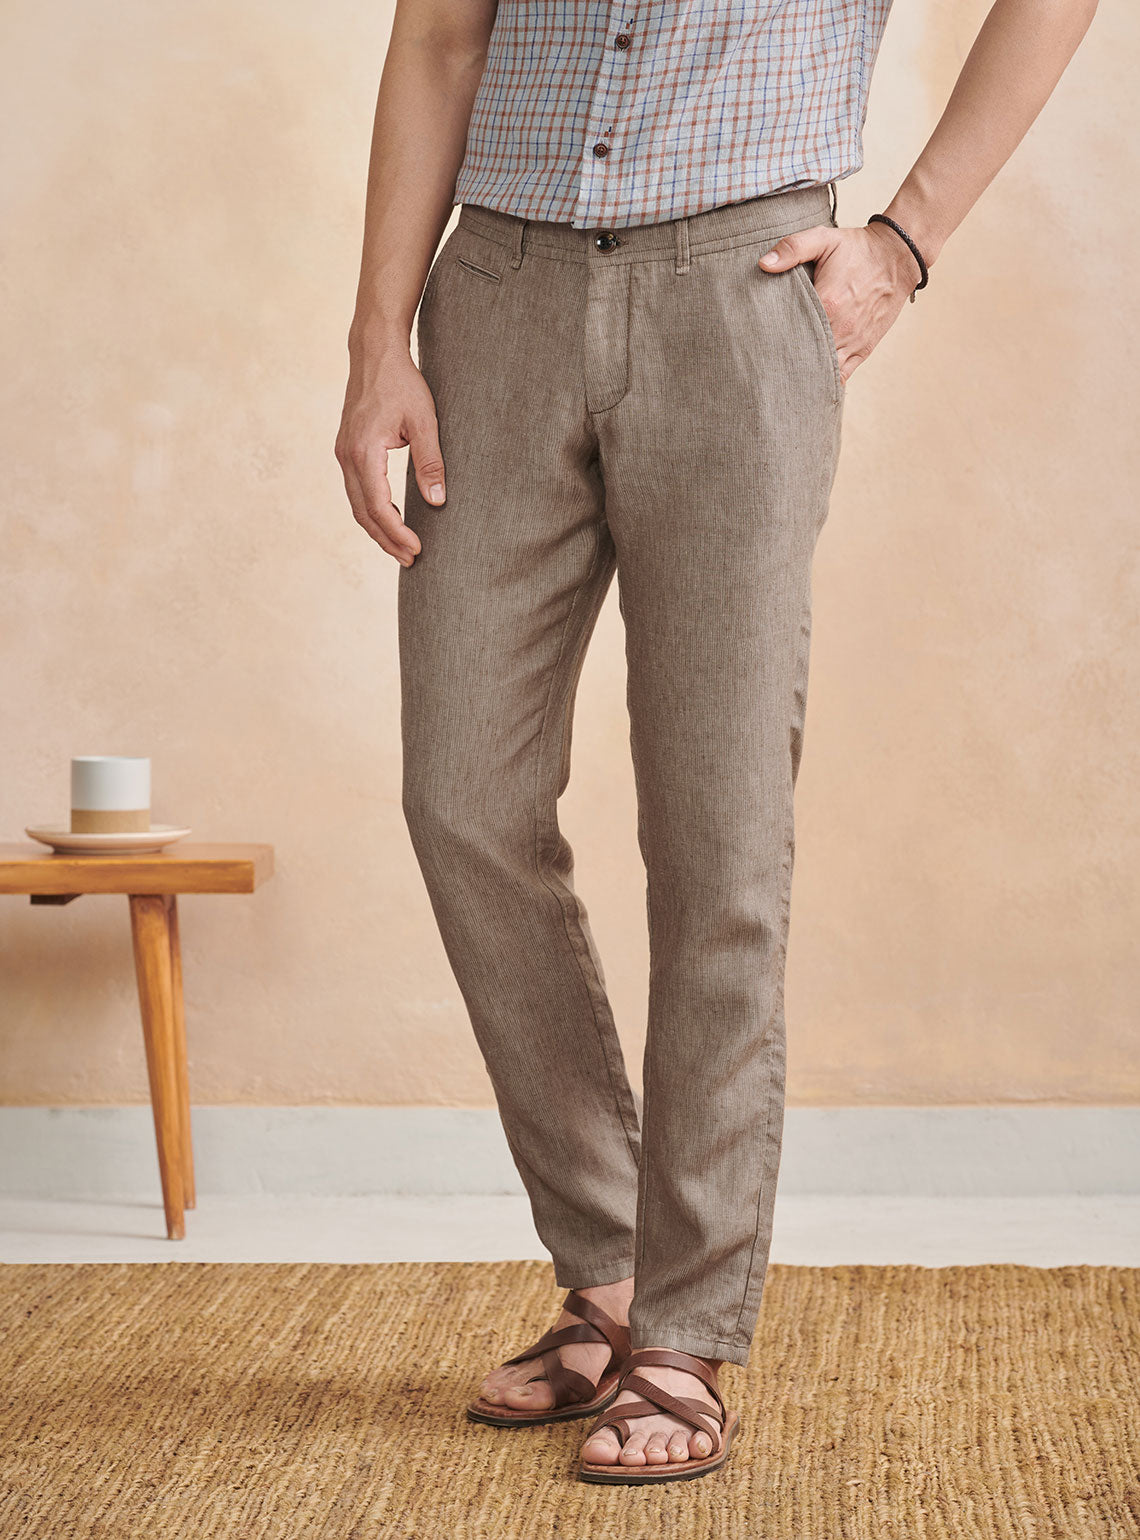 Linen Pants  Buy Linen Pants Online in India